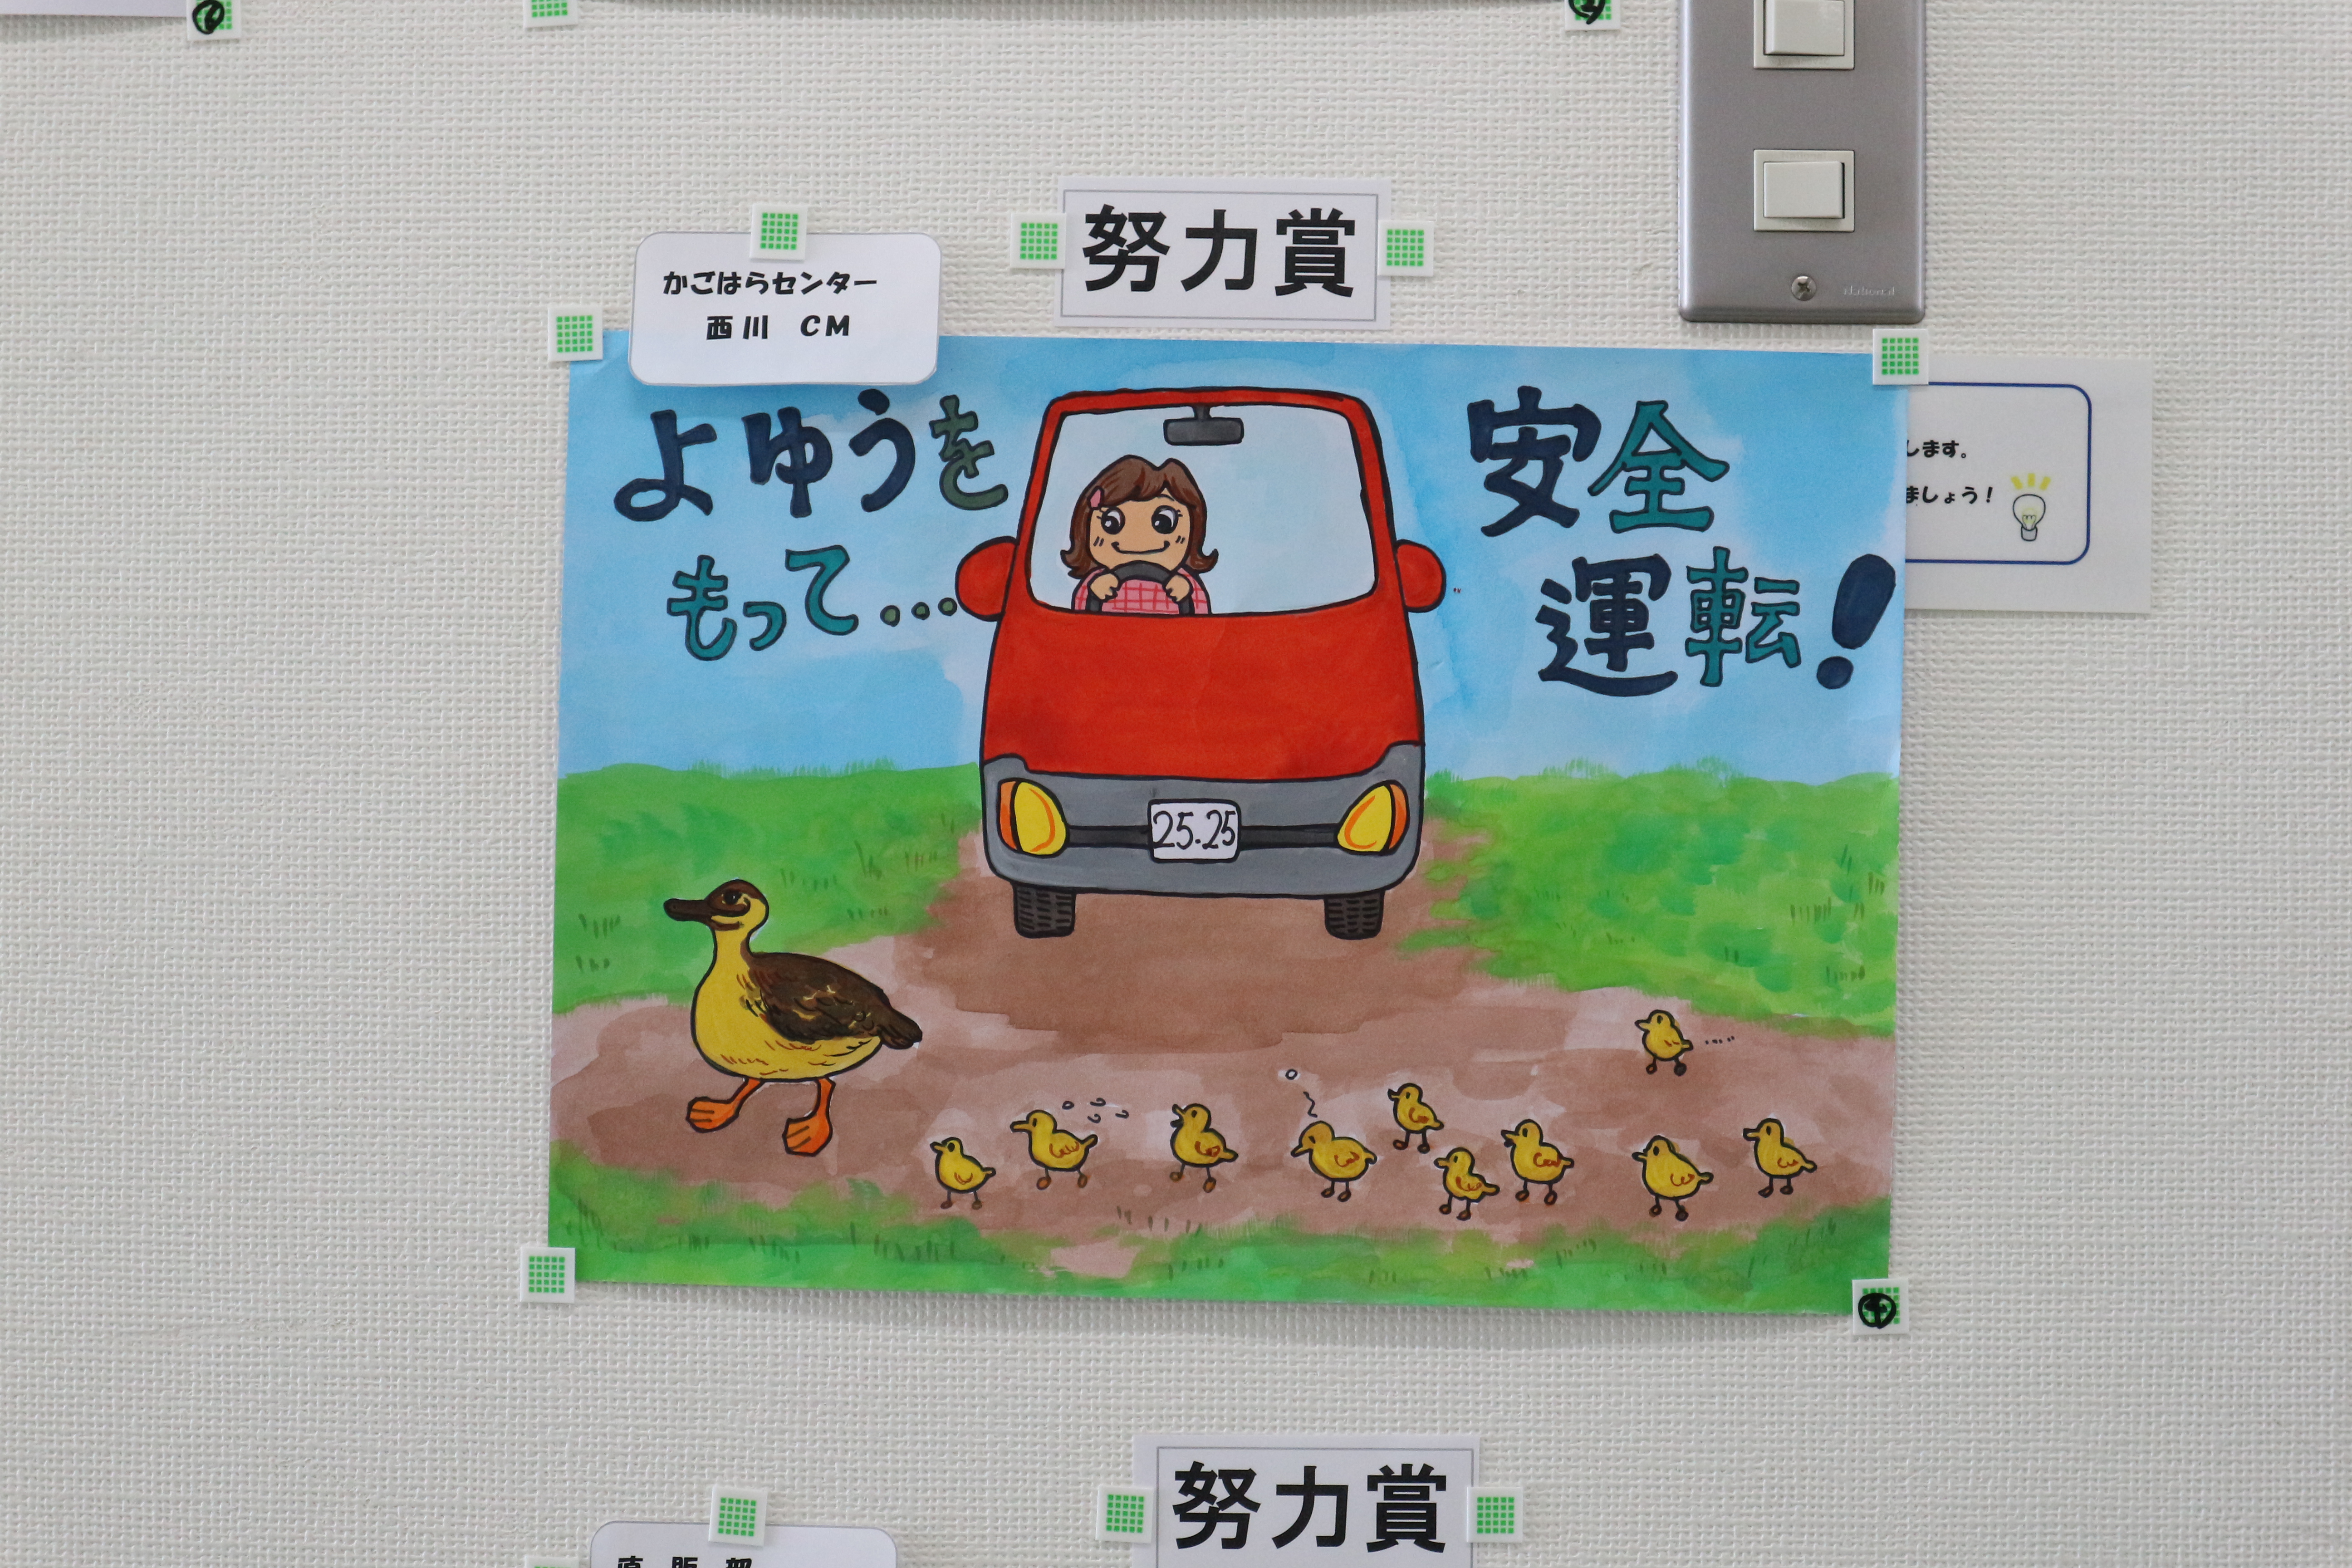 交通安全ポスターコンクールを実施しました 埼玉北部ヤクルト販売 イベント ニュース